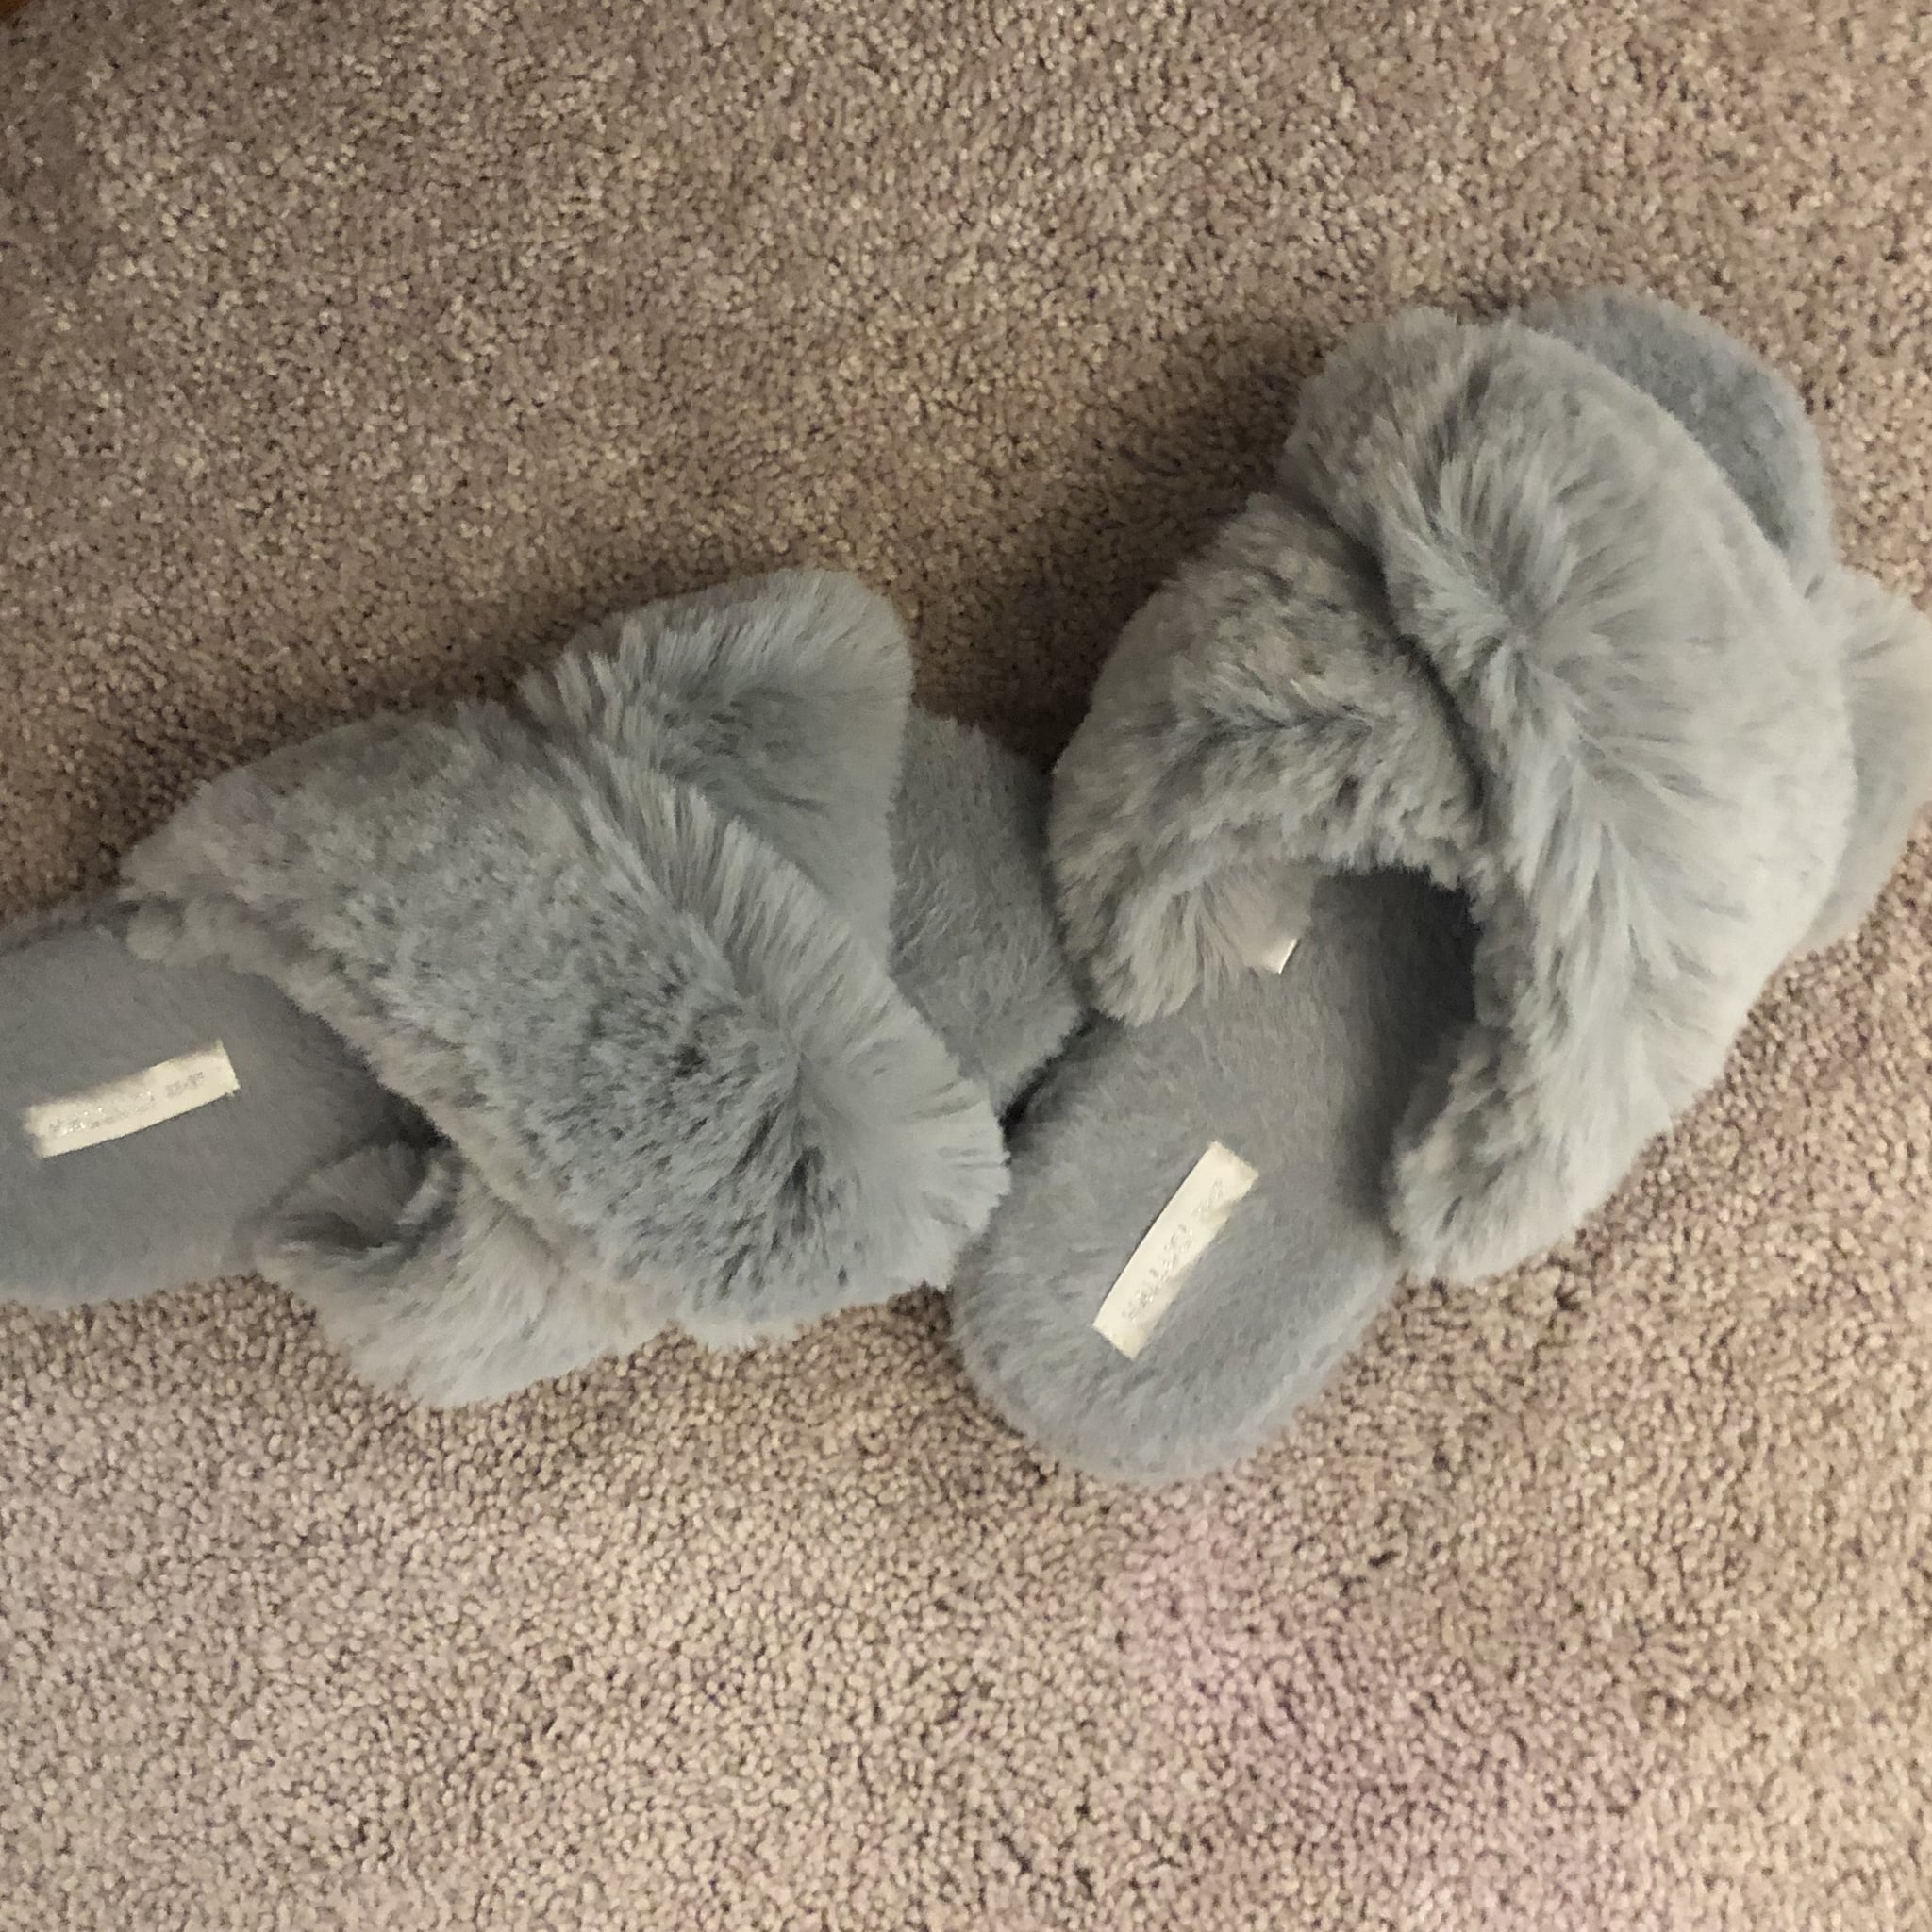 Best Fuzzy Slippers Under $25 